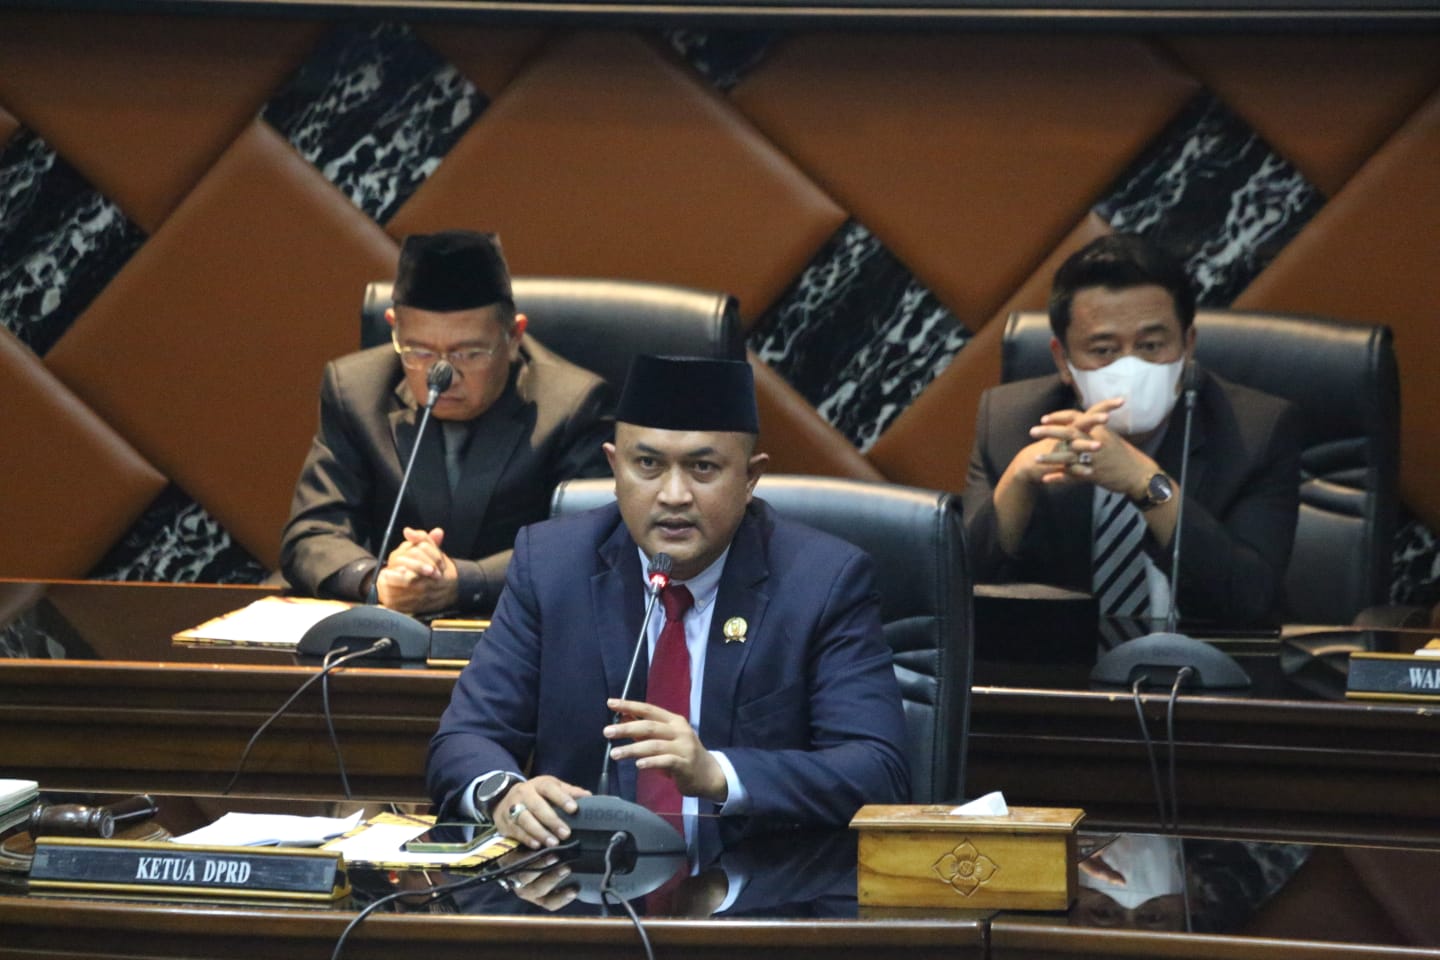 Ketua DPRD Soroti Kinerja Pemkab Bogor